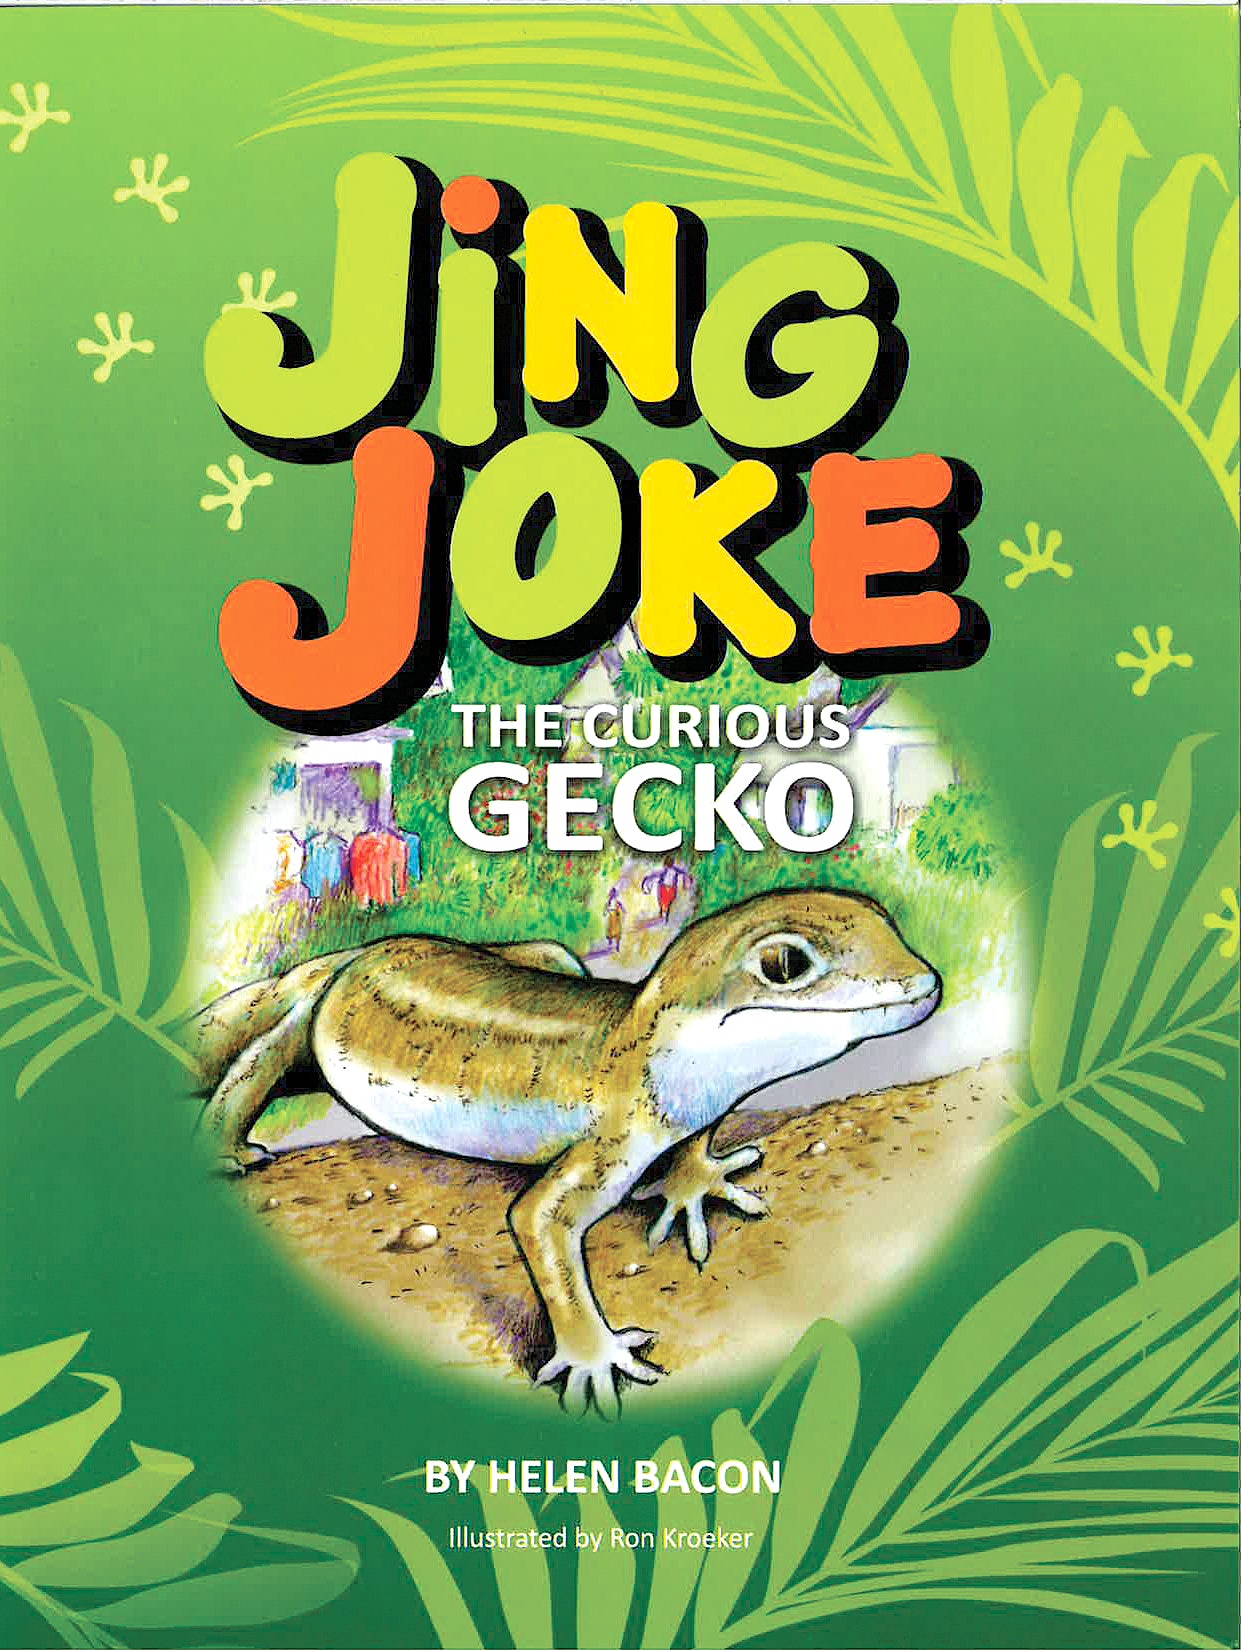 Jing Joke: The Curious Gecko